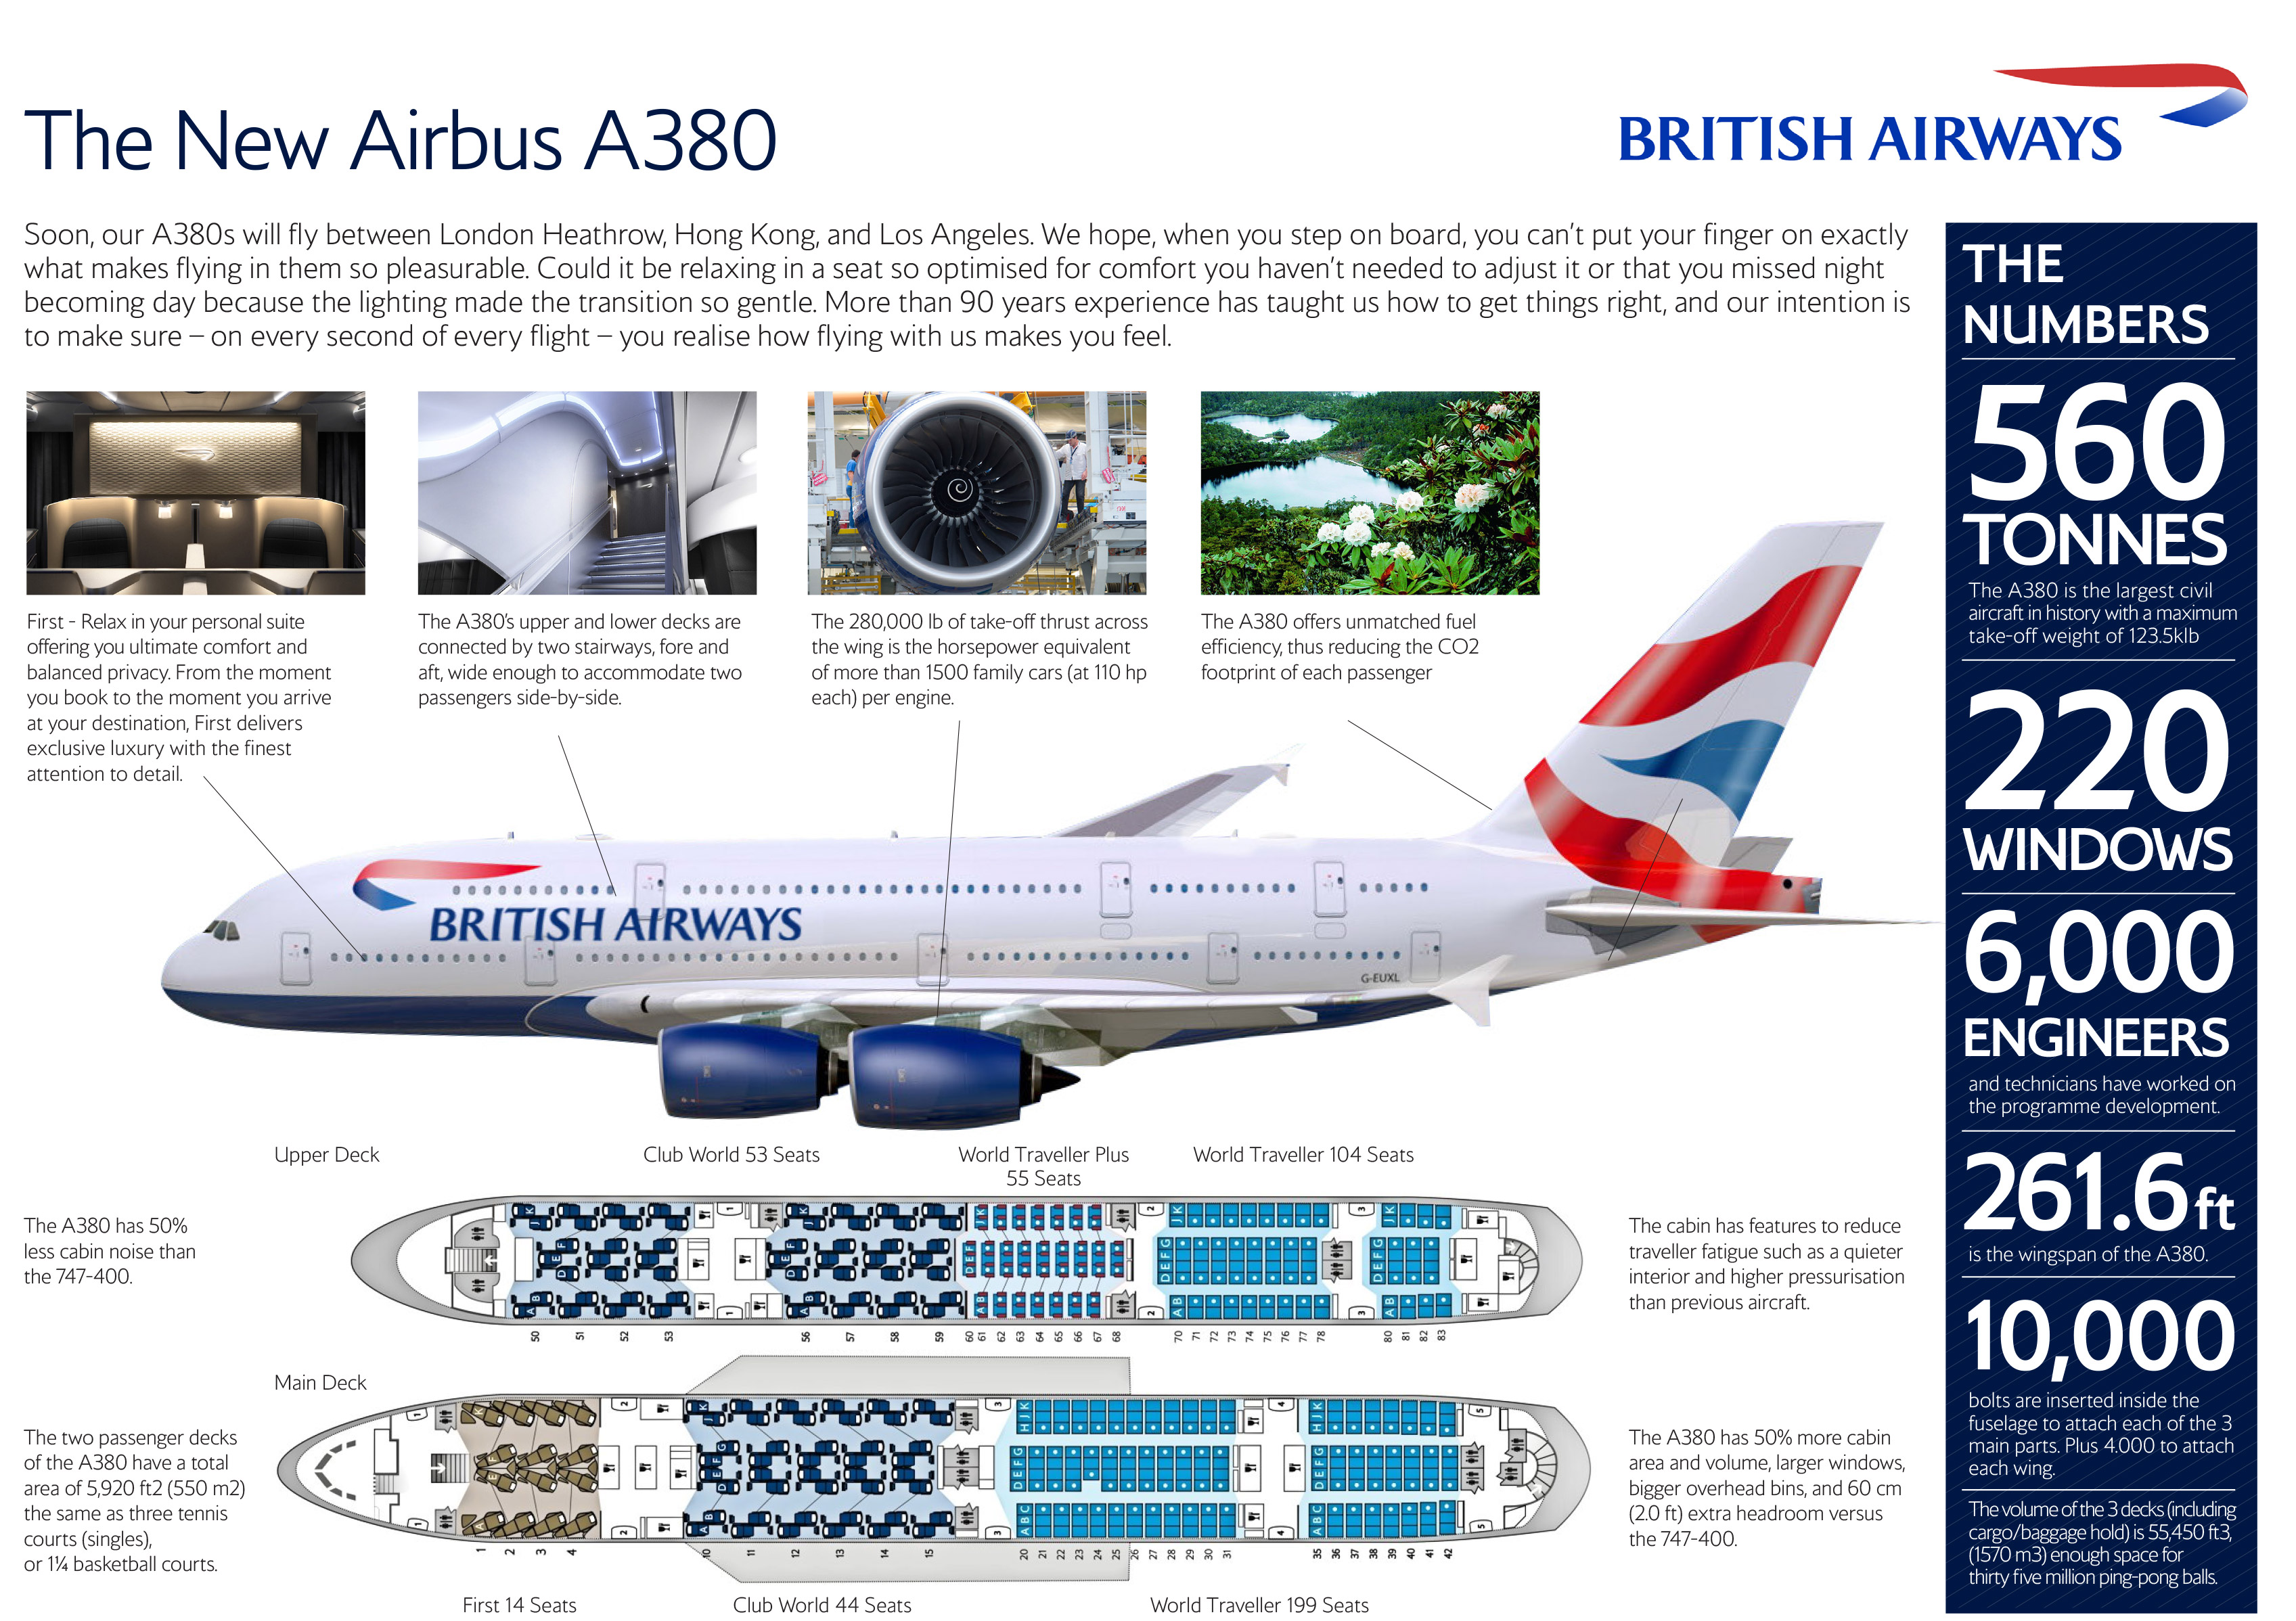 british airways business plan 2017